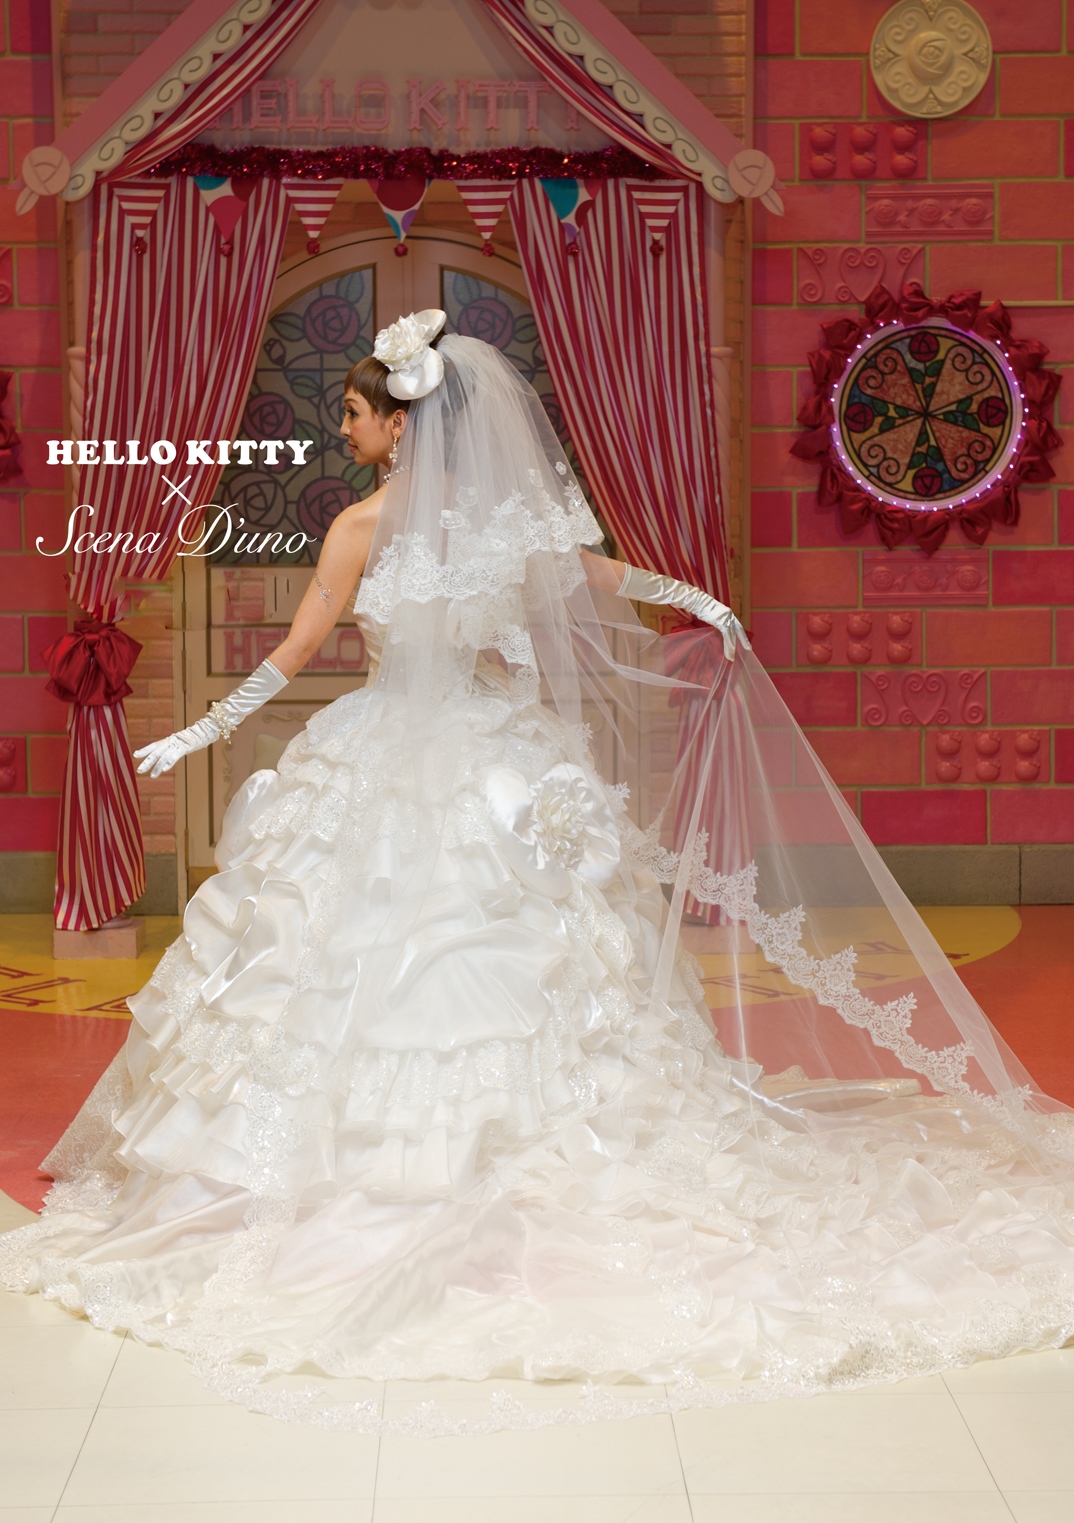 NO.80001 Hello Kitty × Scena D'uno ウェディングドレス ホワイト 